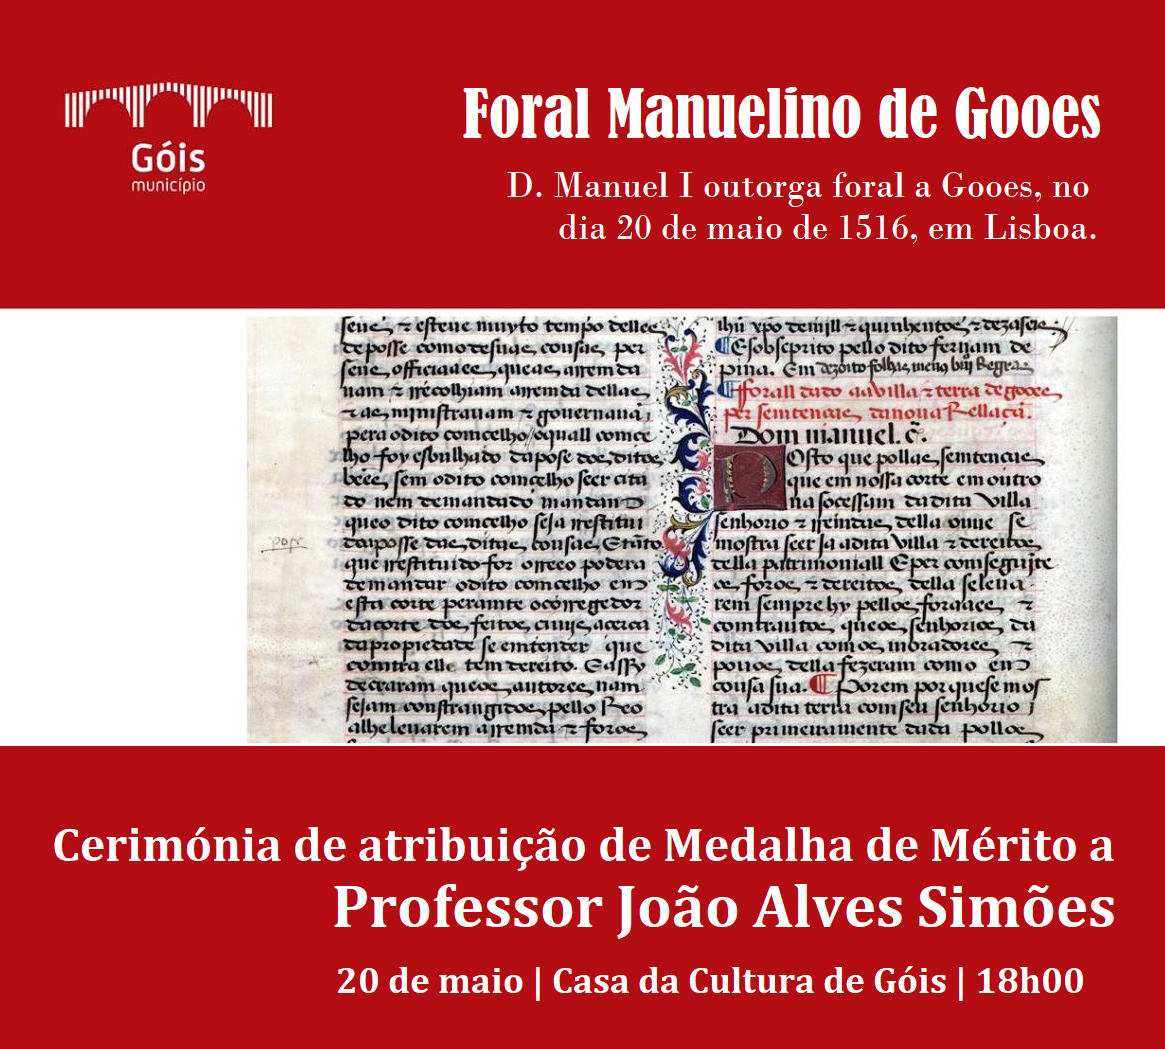 Capa do Evento Atribuição de Medalha de Mérito | Comemoração do Foral Manuelino de Gooes